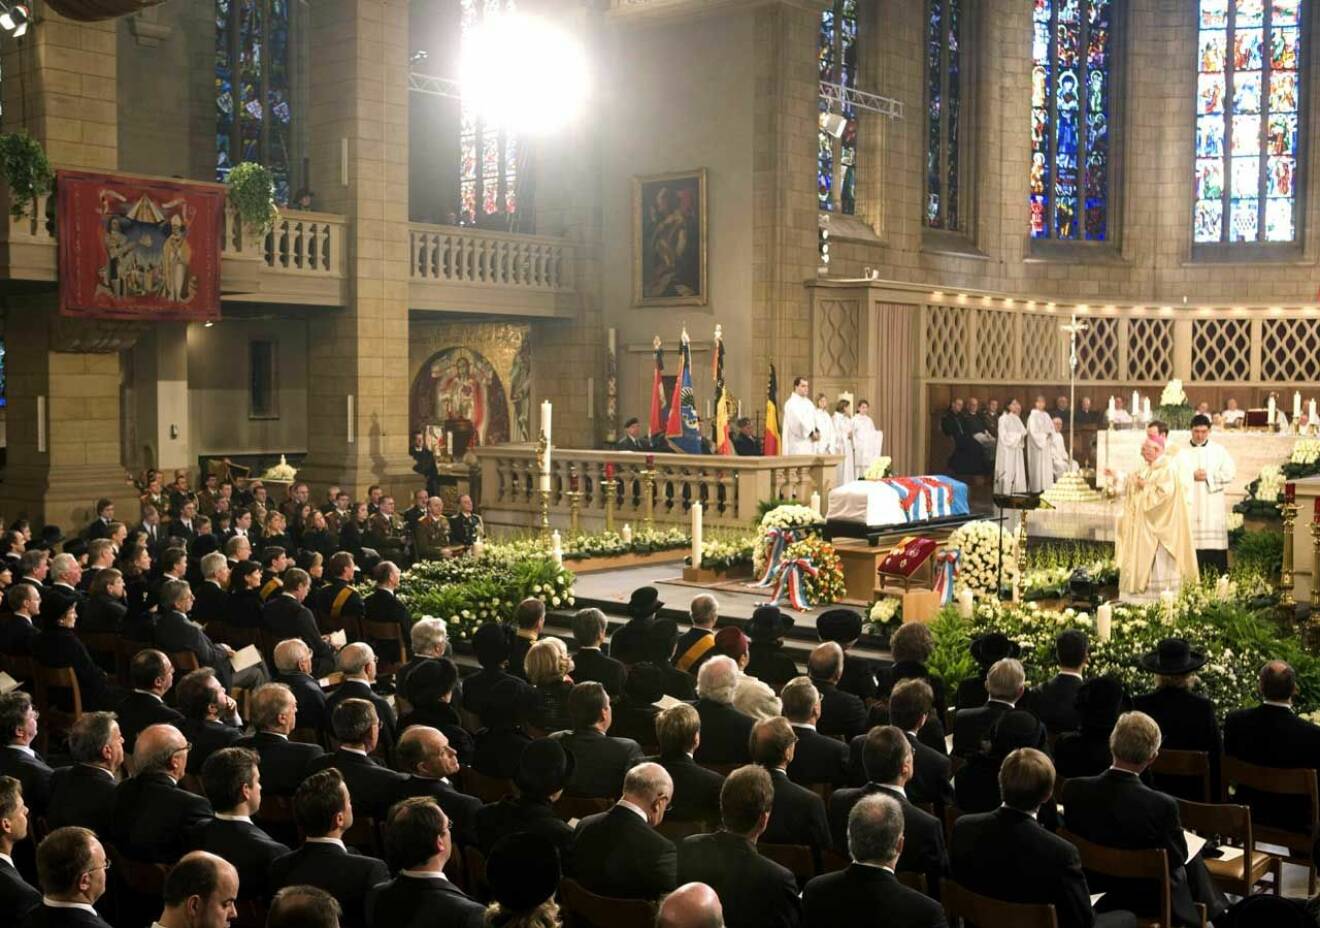 Storhertig Jean begravs lördagen den 4 maj 2019. Så här såg det ut när Jeans hustru storhertiginnan Josephine-Charlotte begravdes i samma katedral.